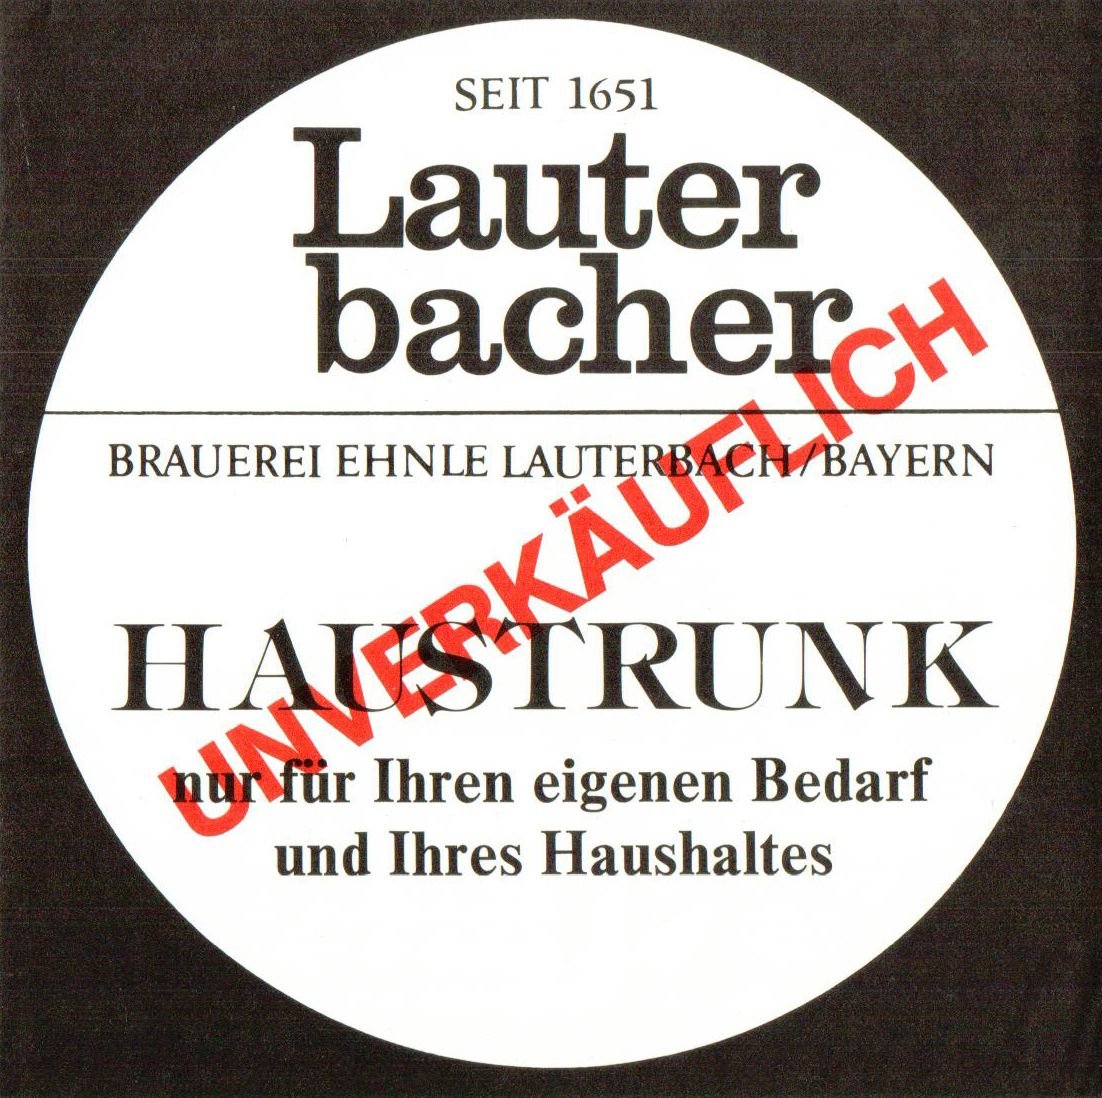 Etikett für Haustrunk der Brauerei Ehnle in Lauterbach, um 1982 (ARCHIV DEUTSCHER BIERETIKETTEN CC BY-NC-SA)